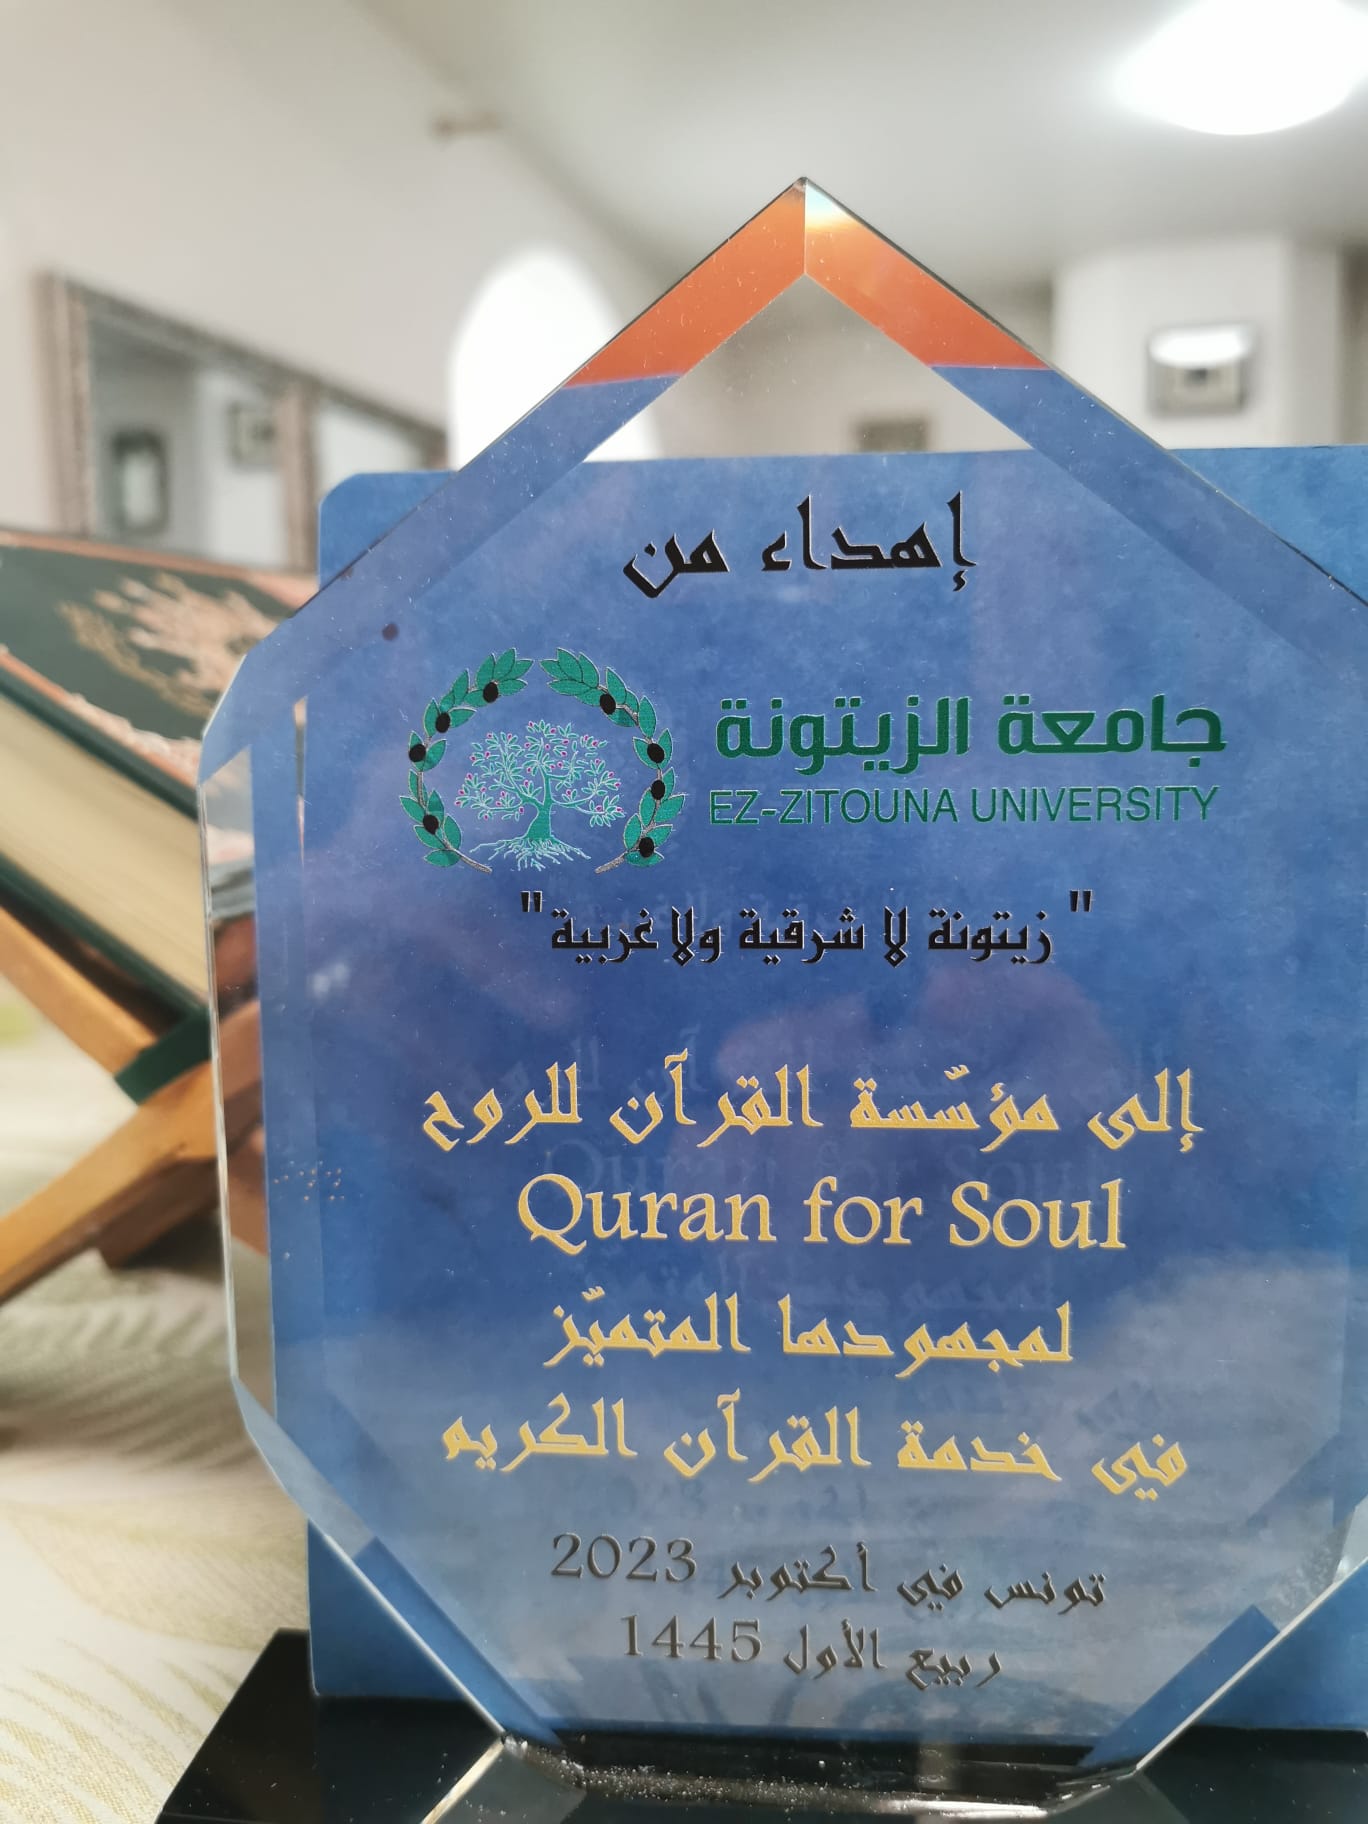 La Fondation QuranForSoul honorée par l'Université Ezzeitouna pour son engagement envers le Saint Coran, dans le sillage de la prestigieuse tradition de l'Université Quran Coran